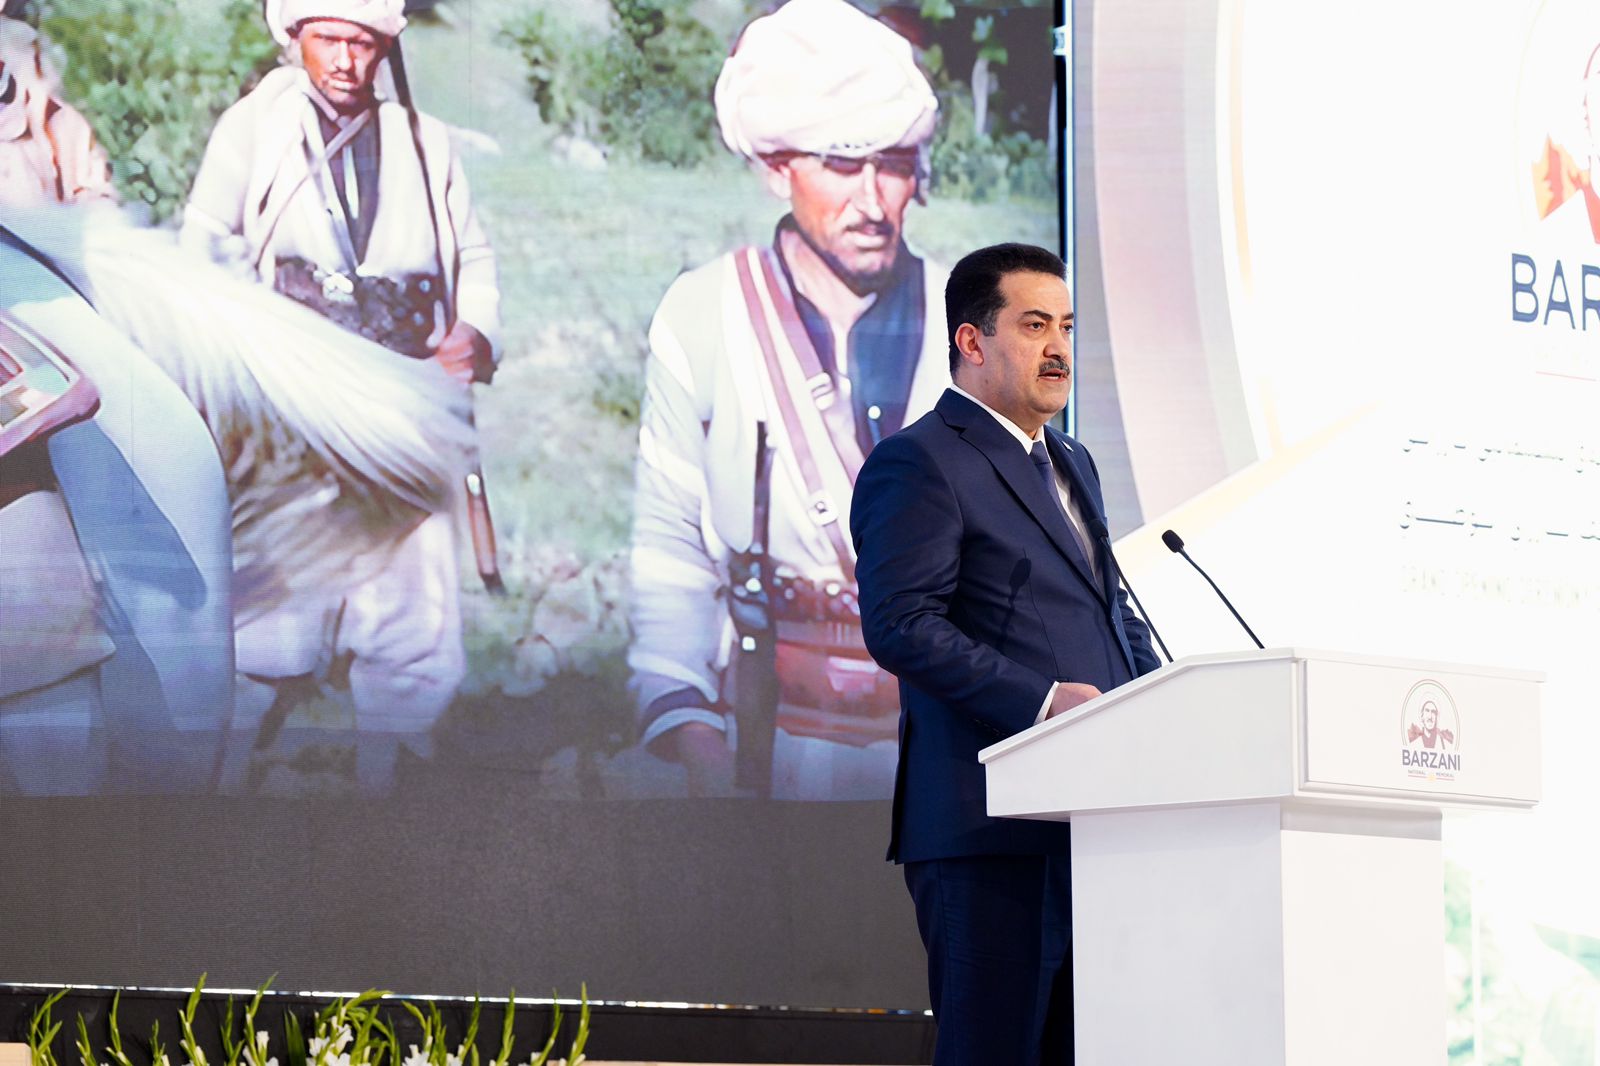 Al-Sudani praises Masoud Barzani's role in building a "New Iraq"